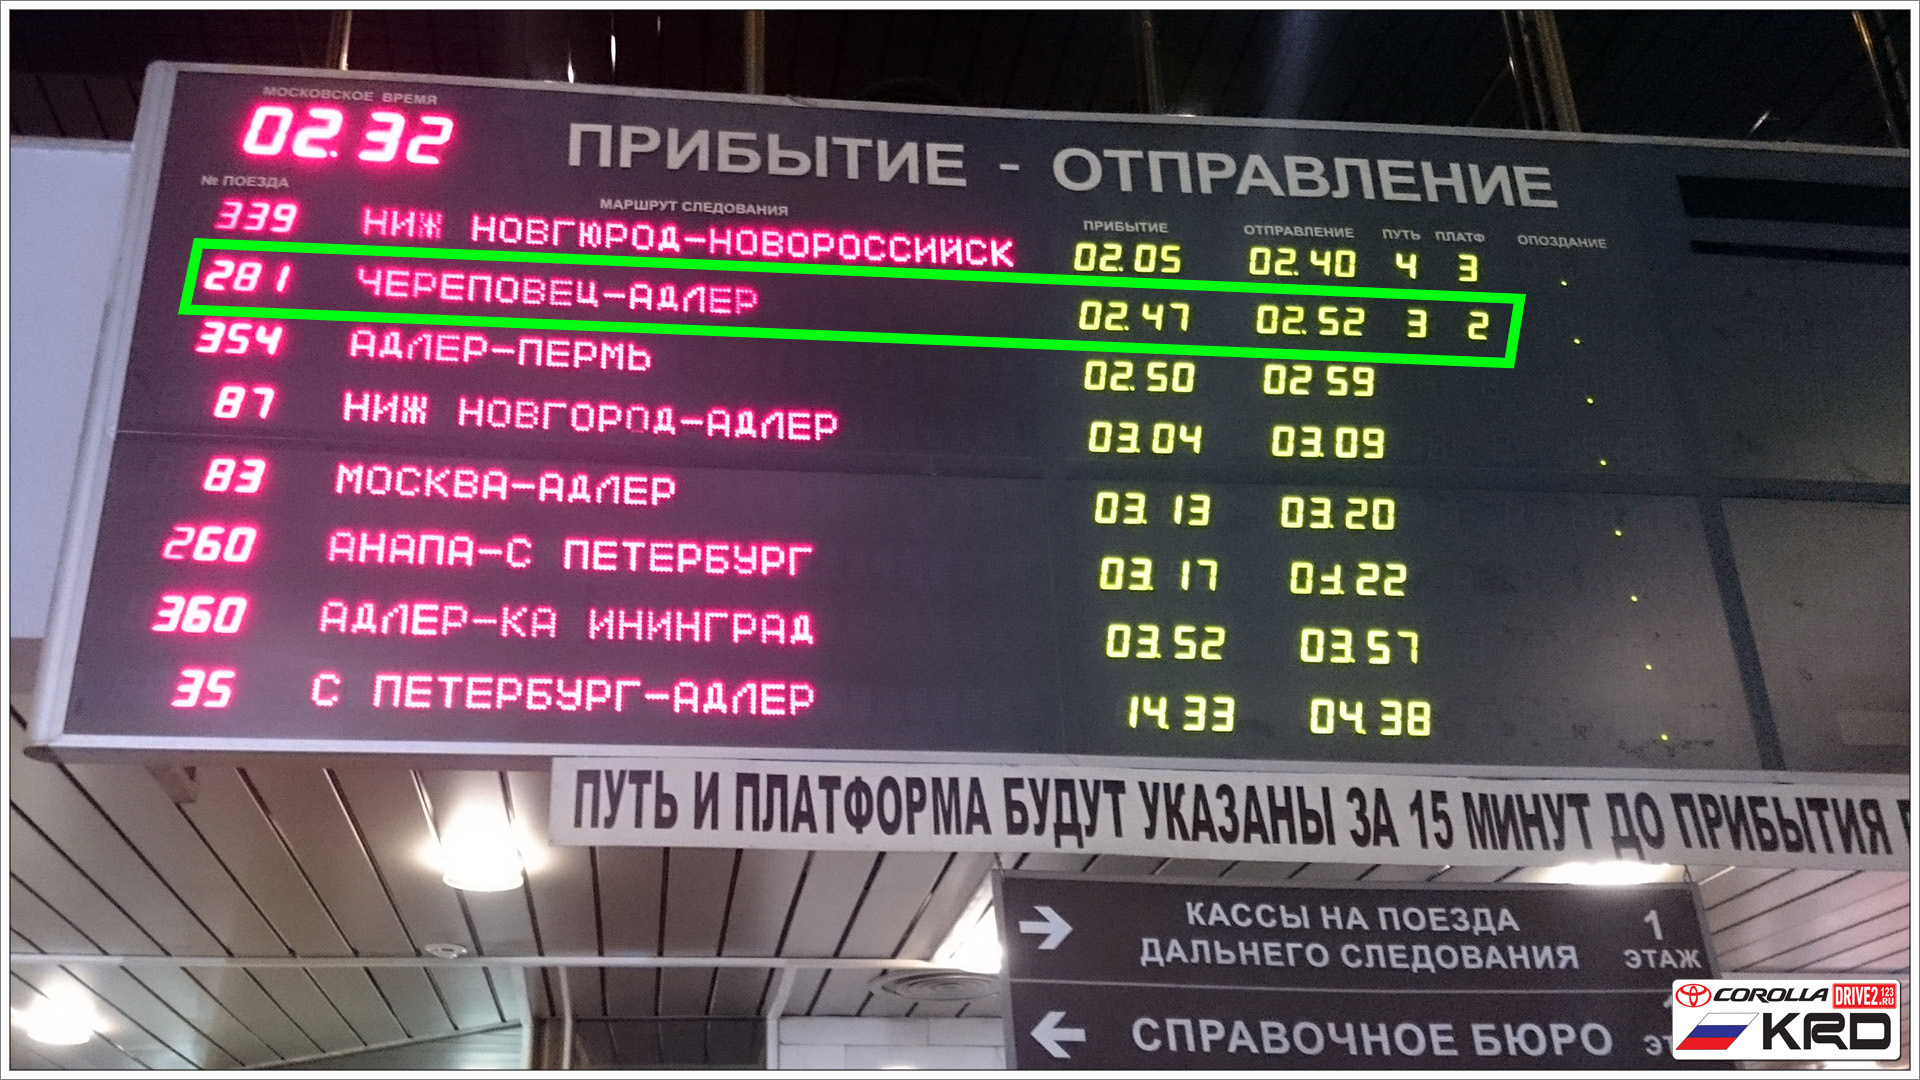 Екатеринбург во сколько прибывает. Прибытие поезда. Время прибытия поезда. Когда прибывает поезд. Прибытие.